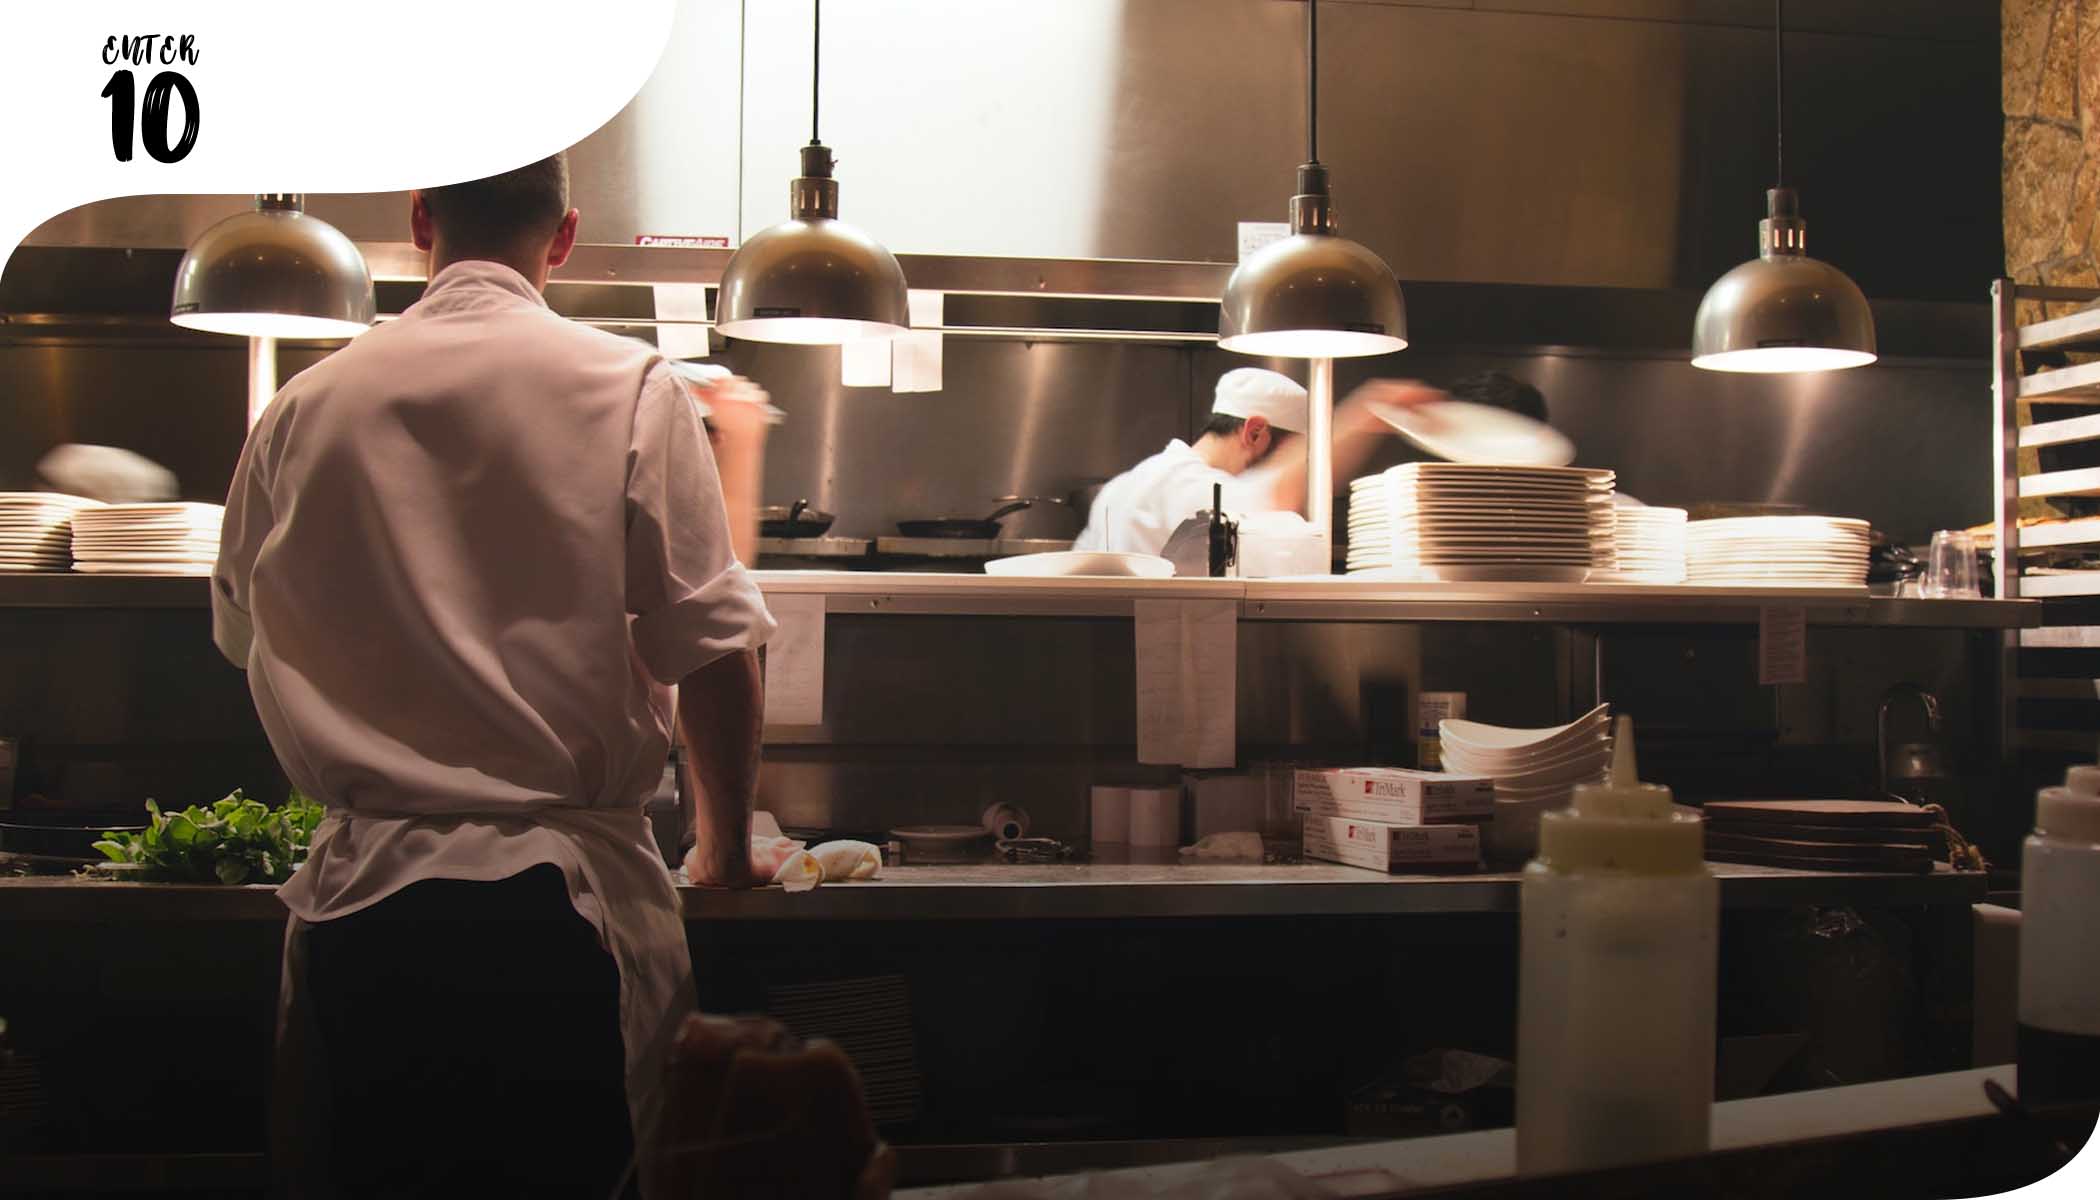 Более 100 000 ресторанов закрылись за последние 6 месяцев пандемии